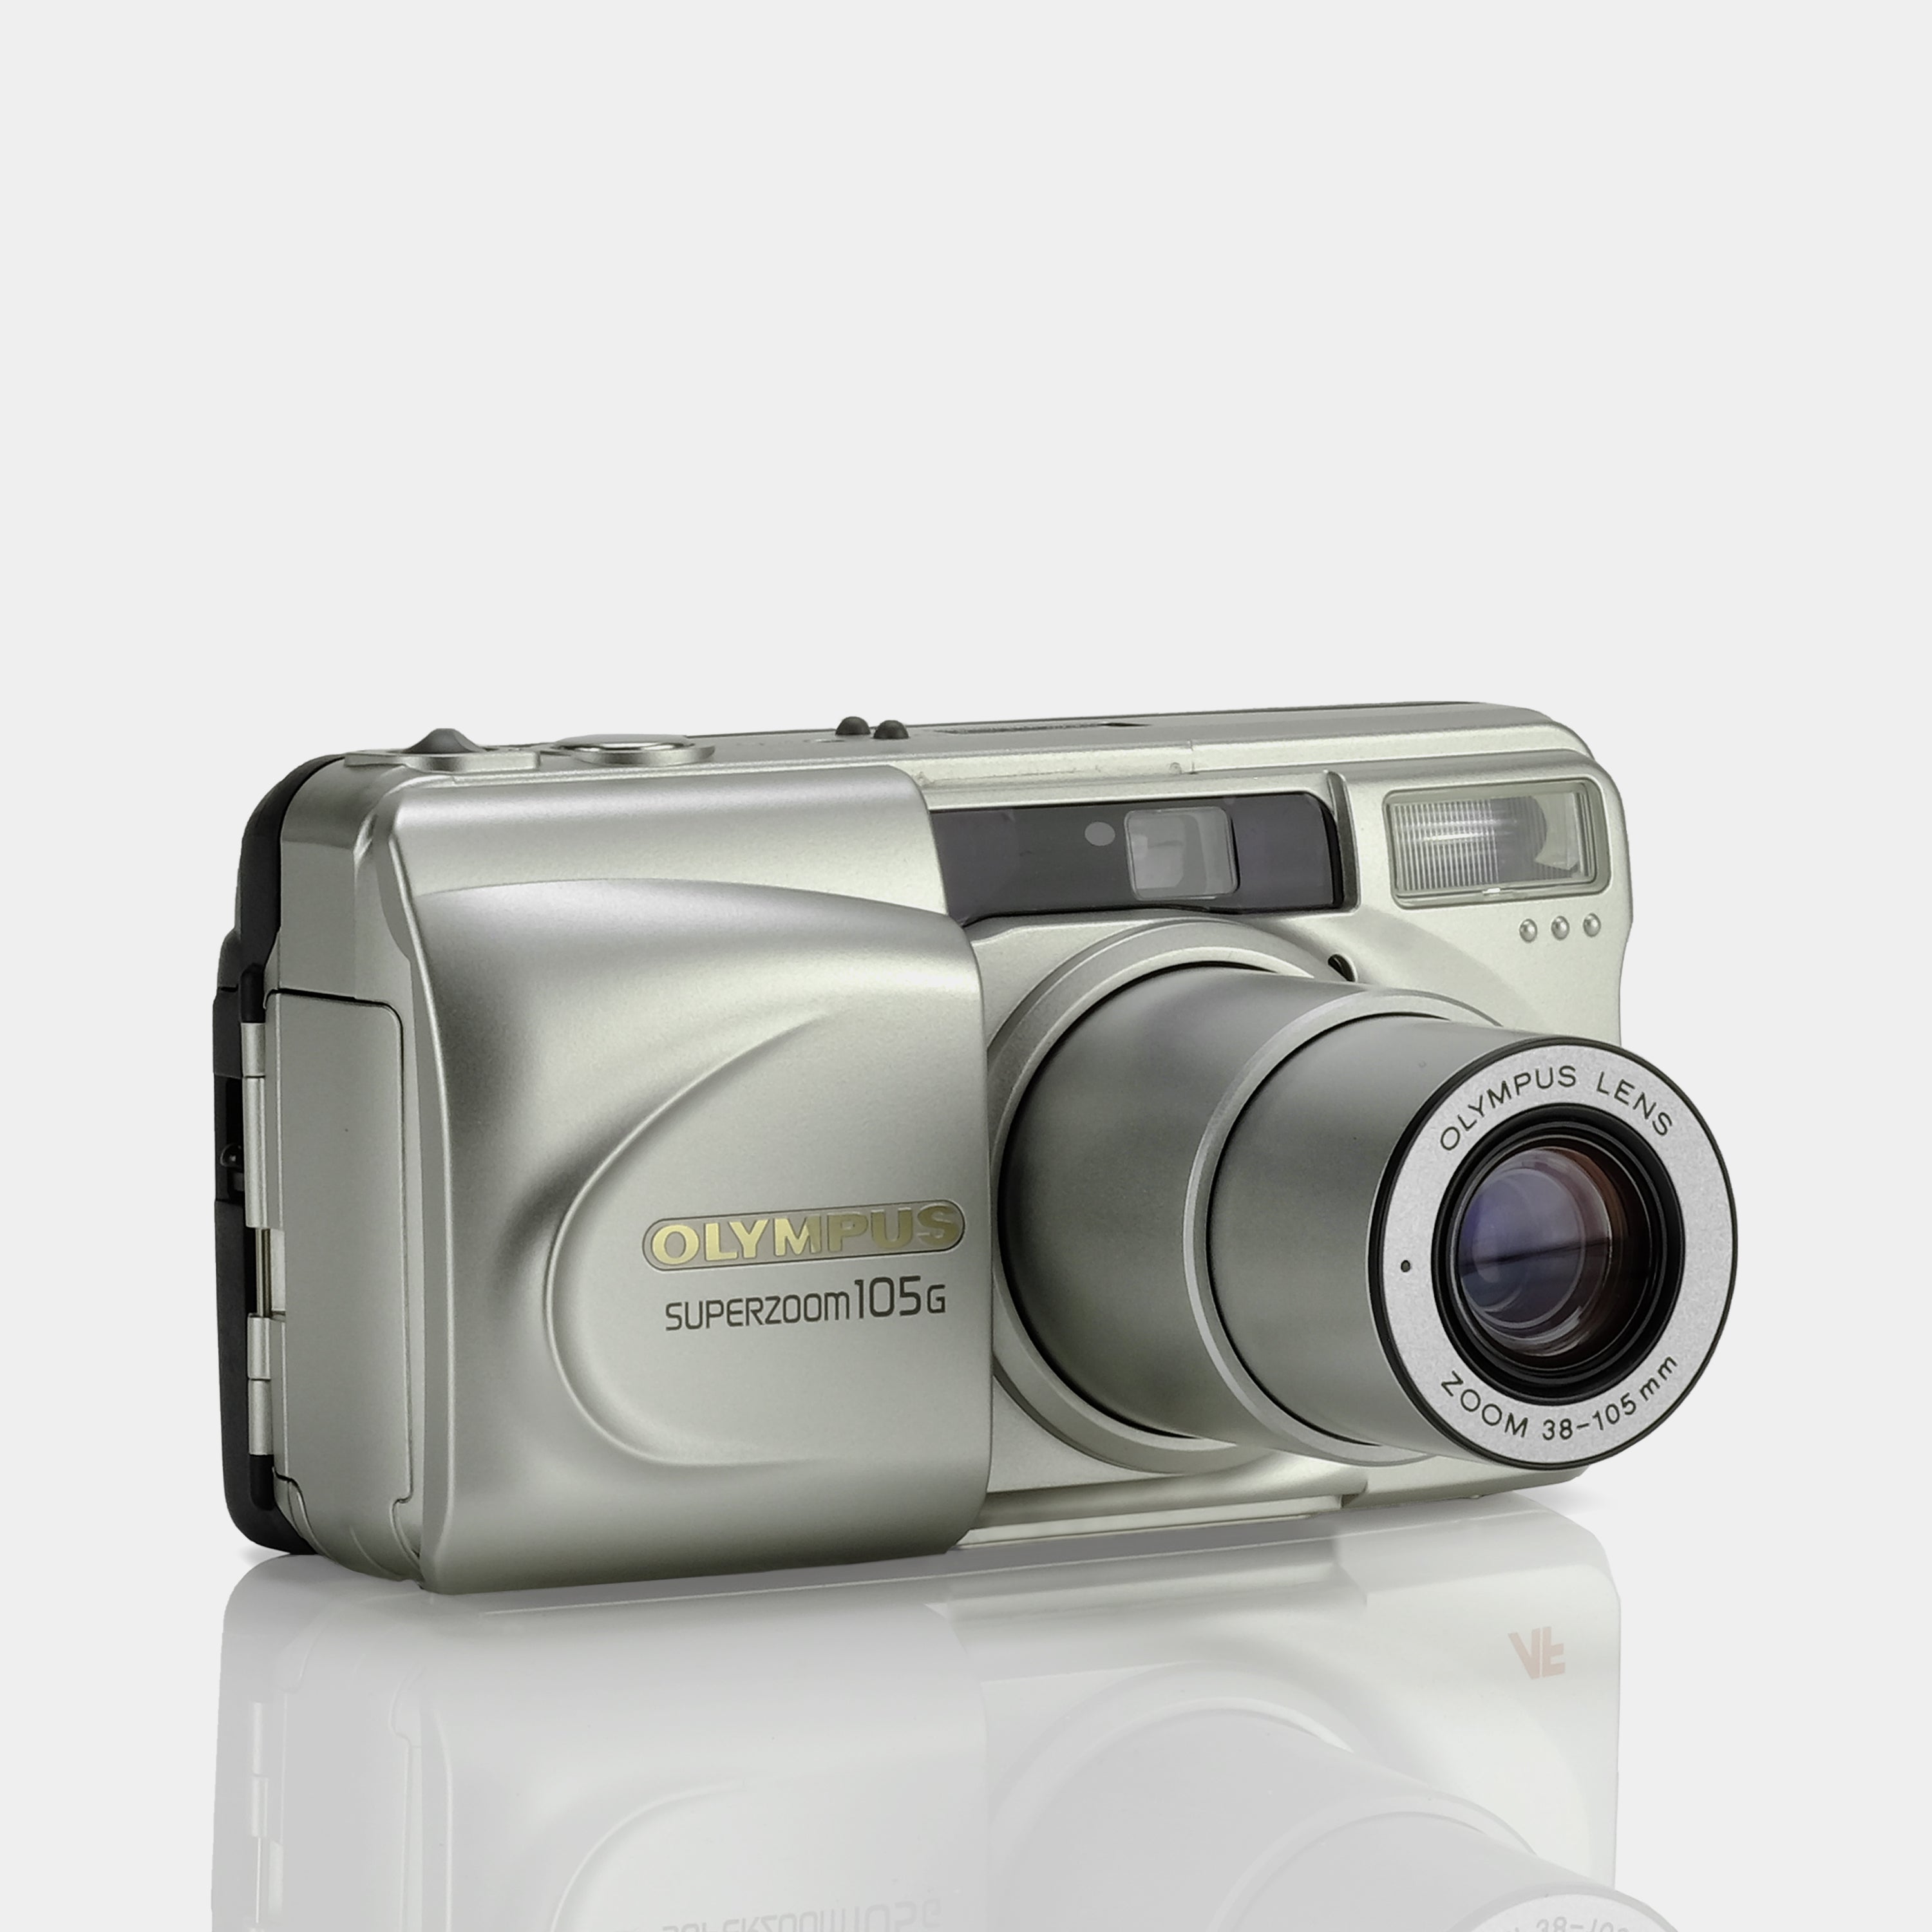 OLYMPUS オリンパス superzoom 105G コンパクトカメラ - フィルムカメラ